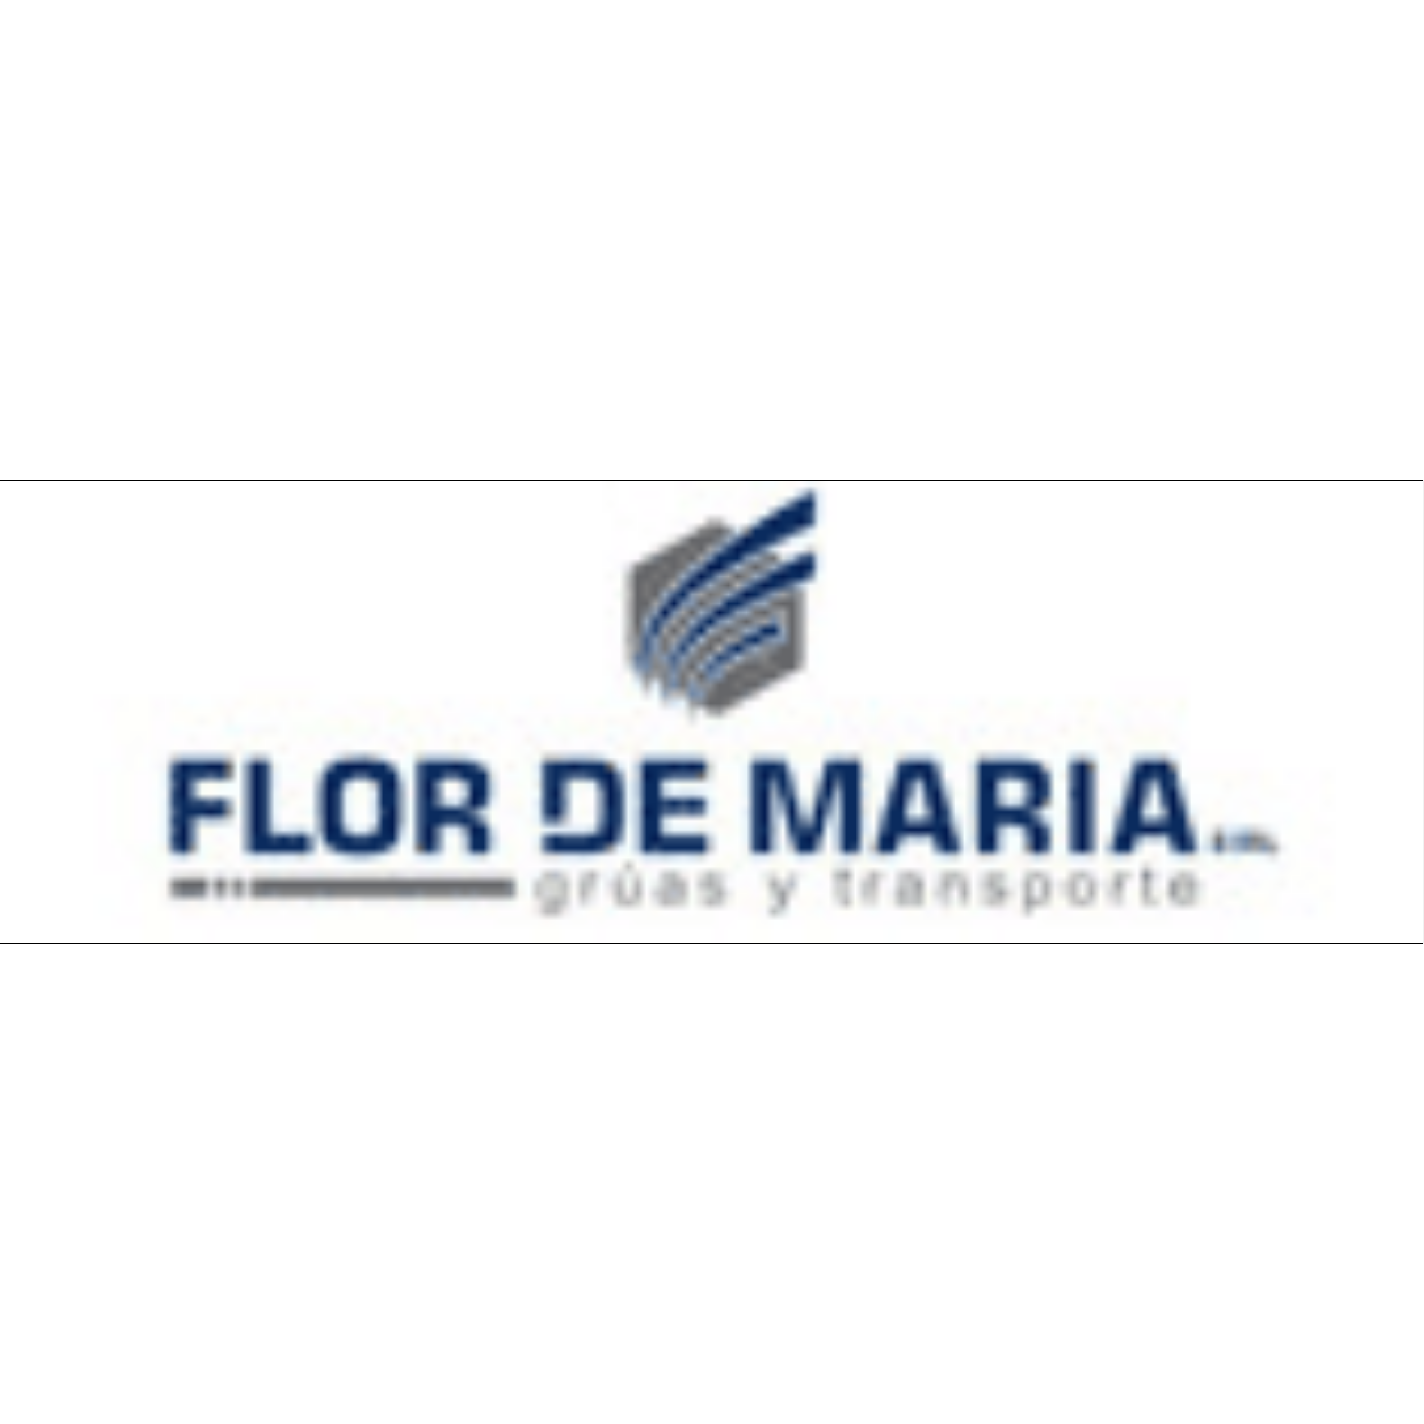 Flor De Maria E.I.R.L. Arequipa 958 025 669